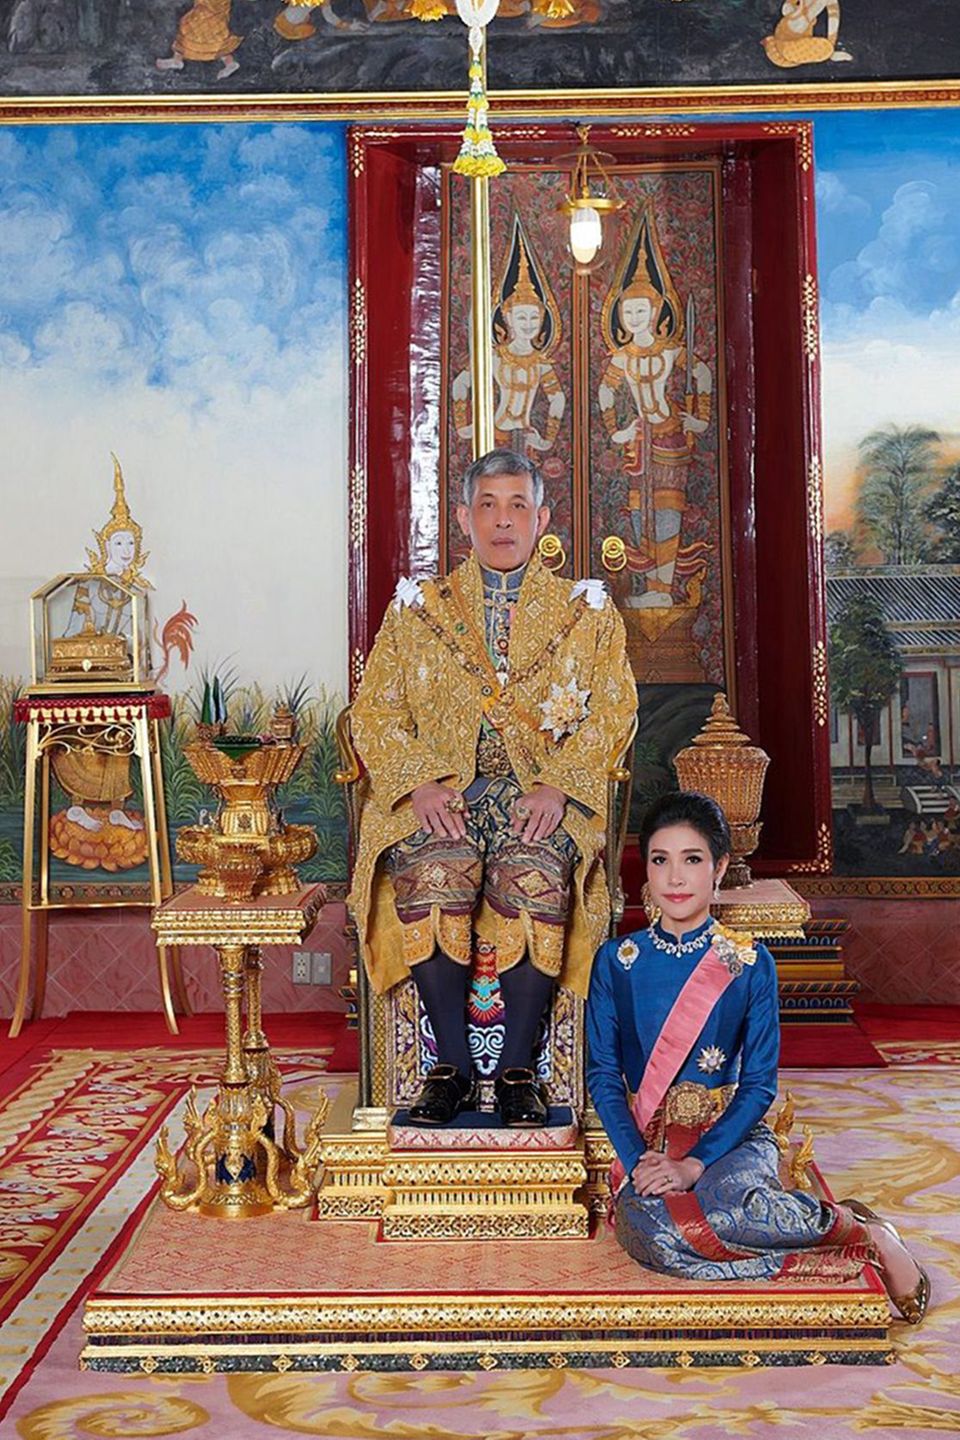 König Maha Vajiralongkorn und Sineenat Wongvajirapakdi